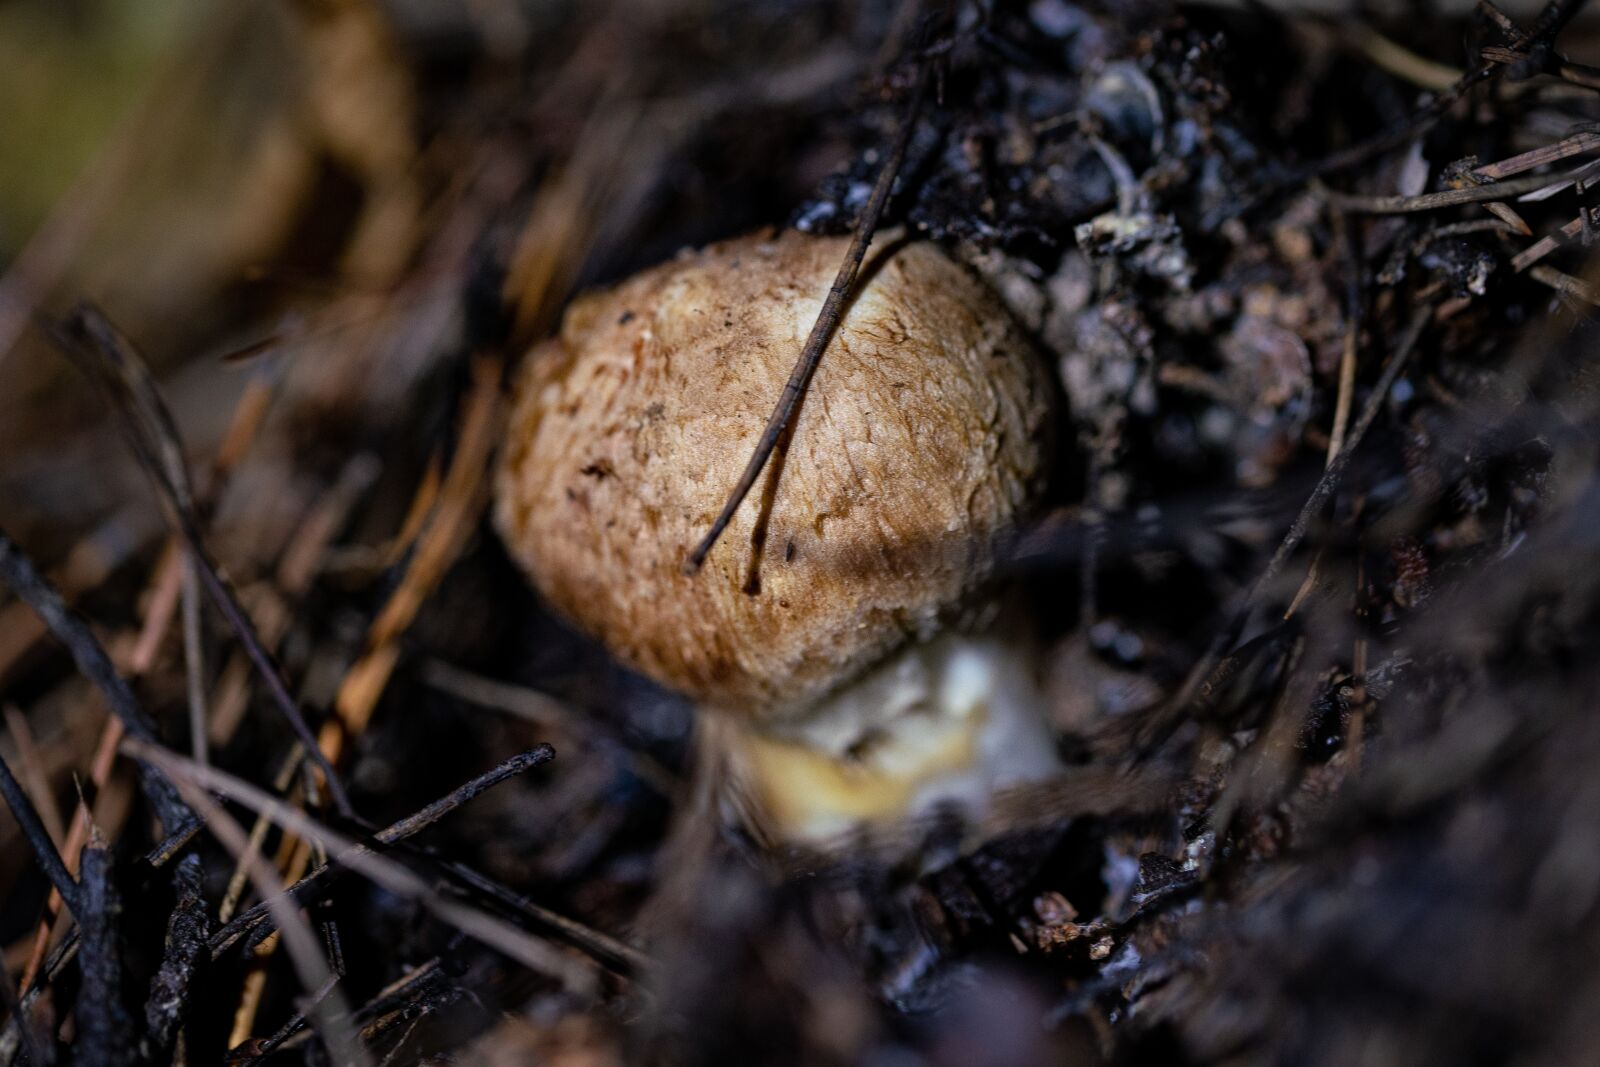 Sony a99 II sample photo. Mushroom, pine mushroom, food photography